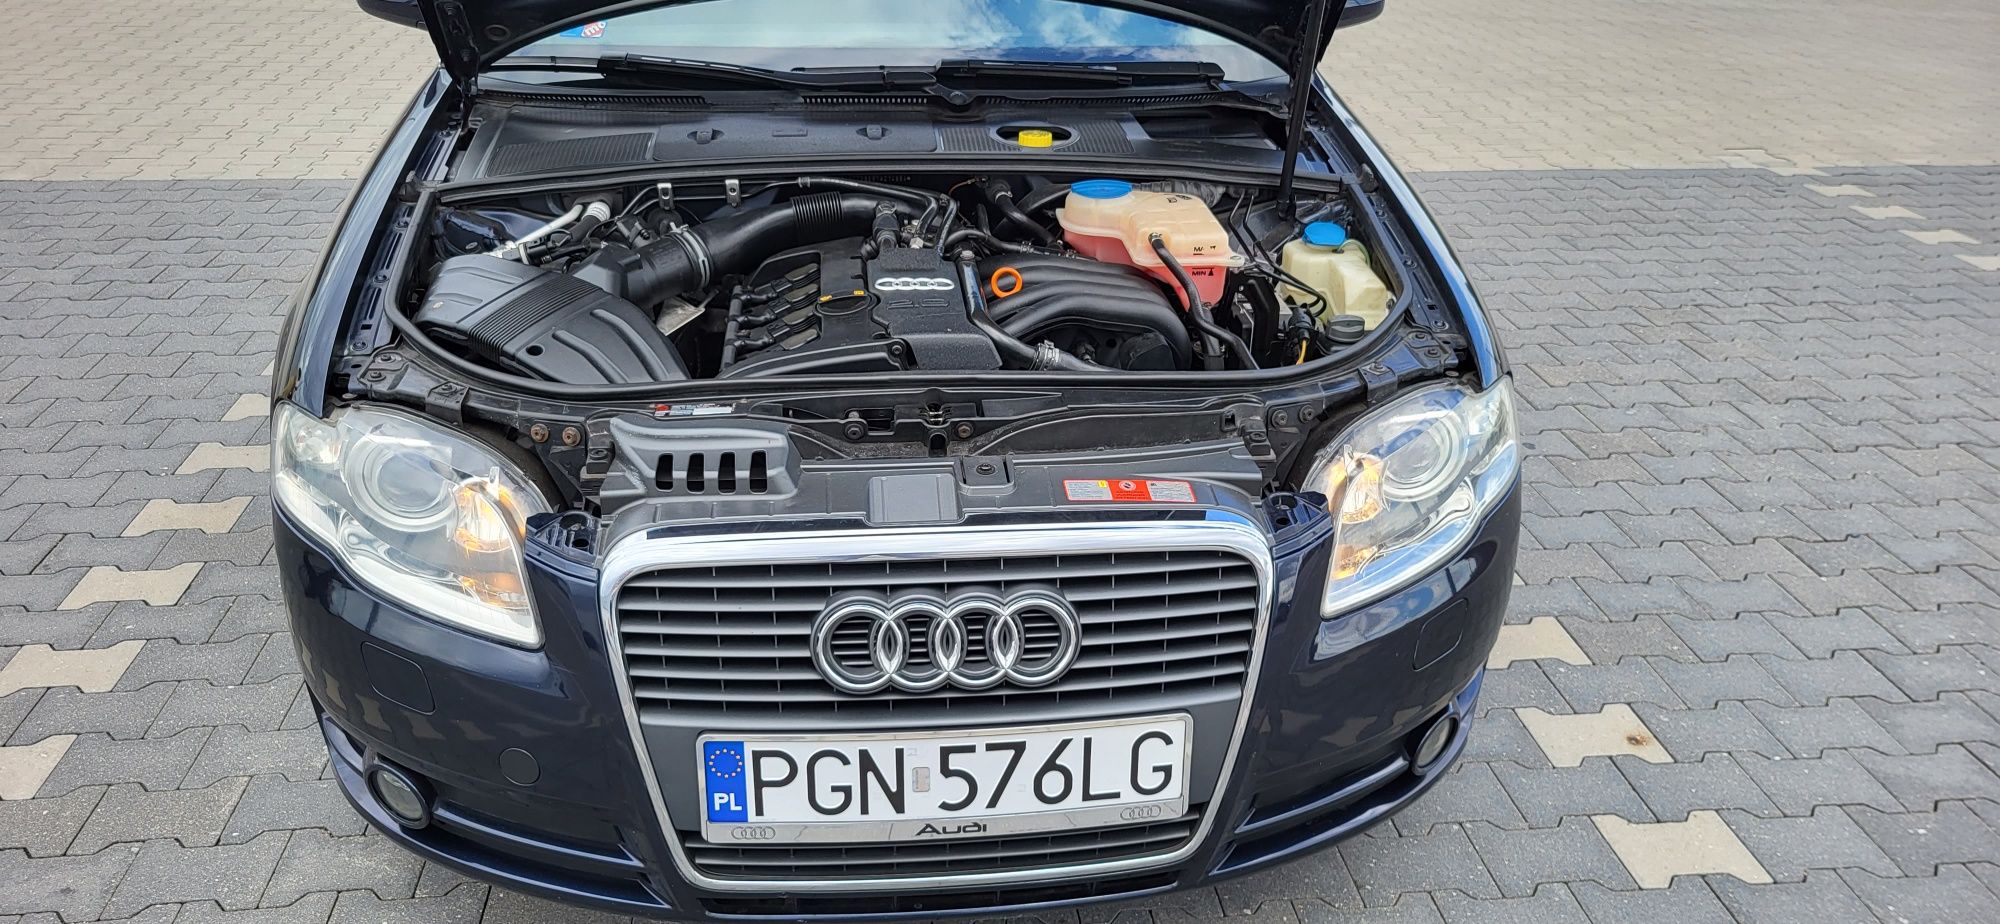 Audi a4 b7 Avant